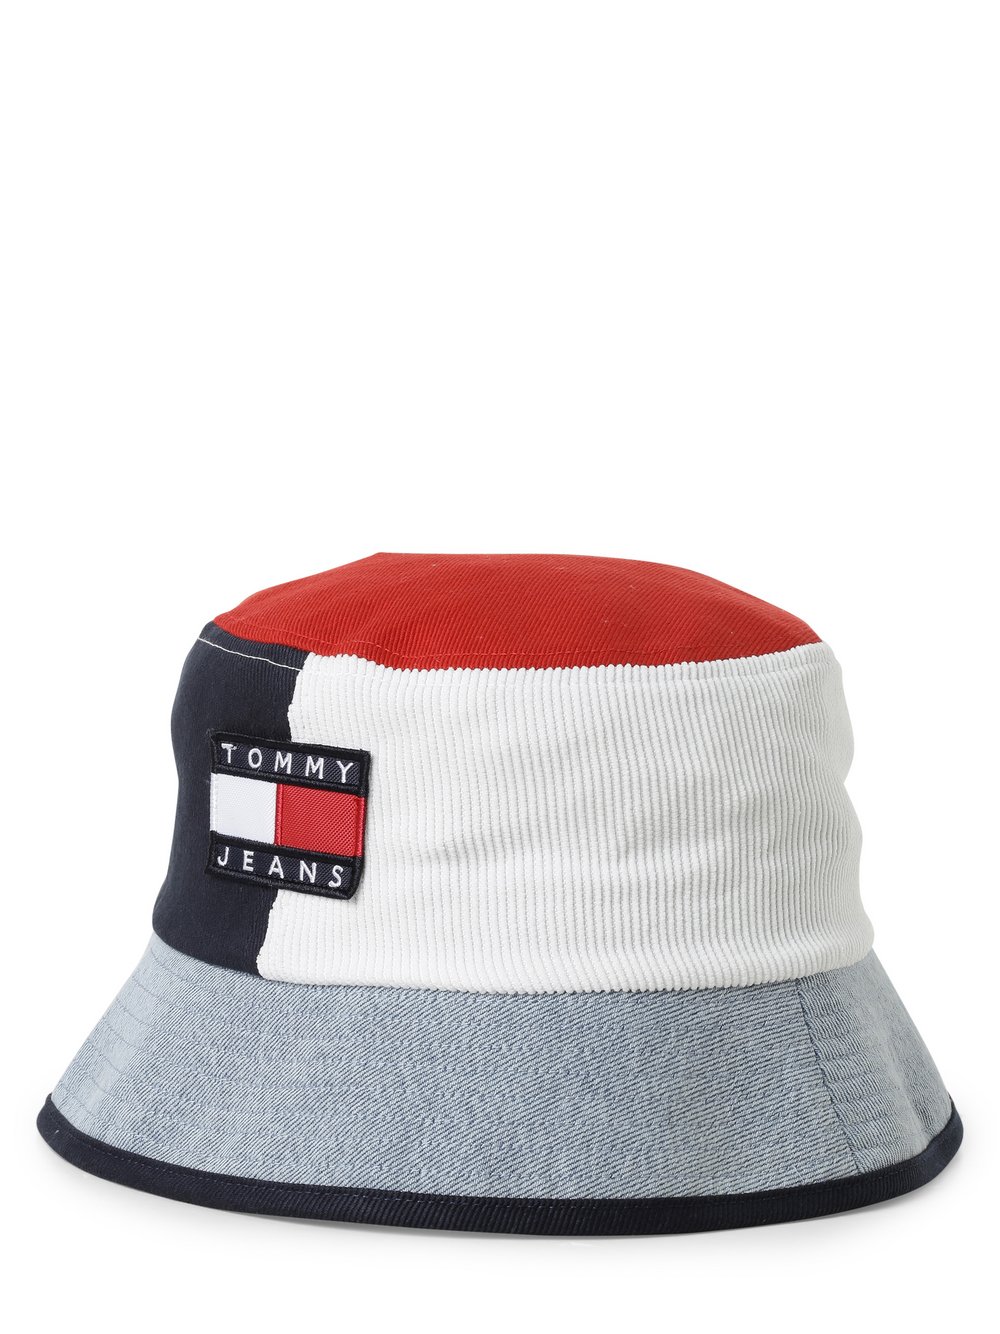 Tommy Jeans - Damski bucket hat, wielokolorowy|niebieski|czerwony